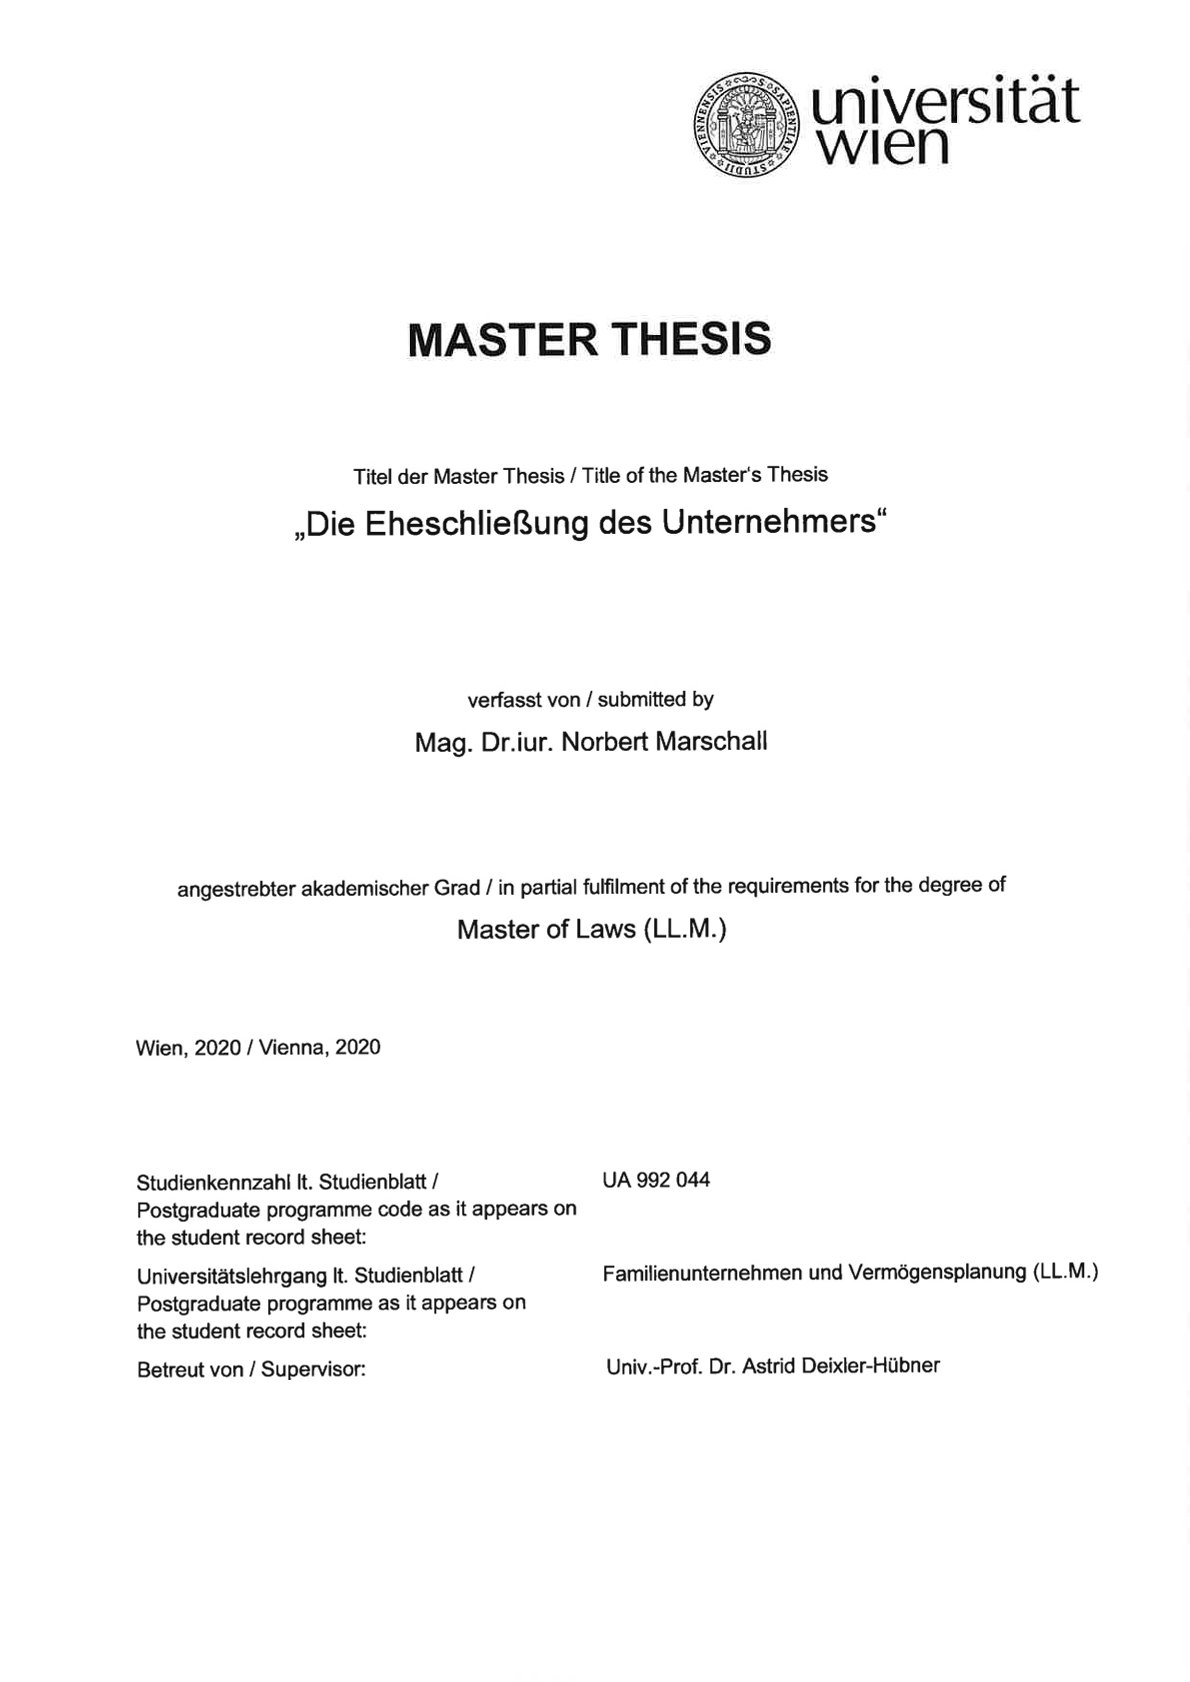 Cover Masterthesis von Mag. Dr.jur. Norbert Marschall, Universität Wien, 2020